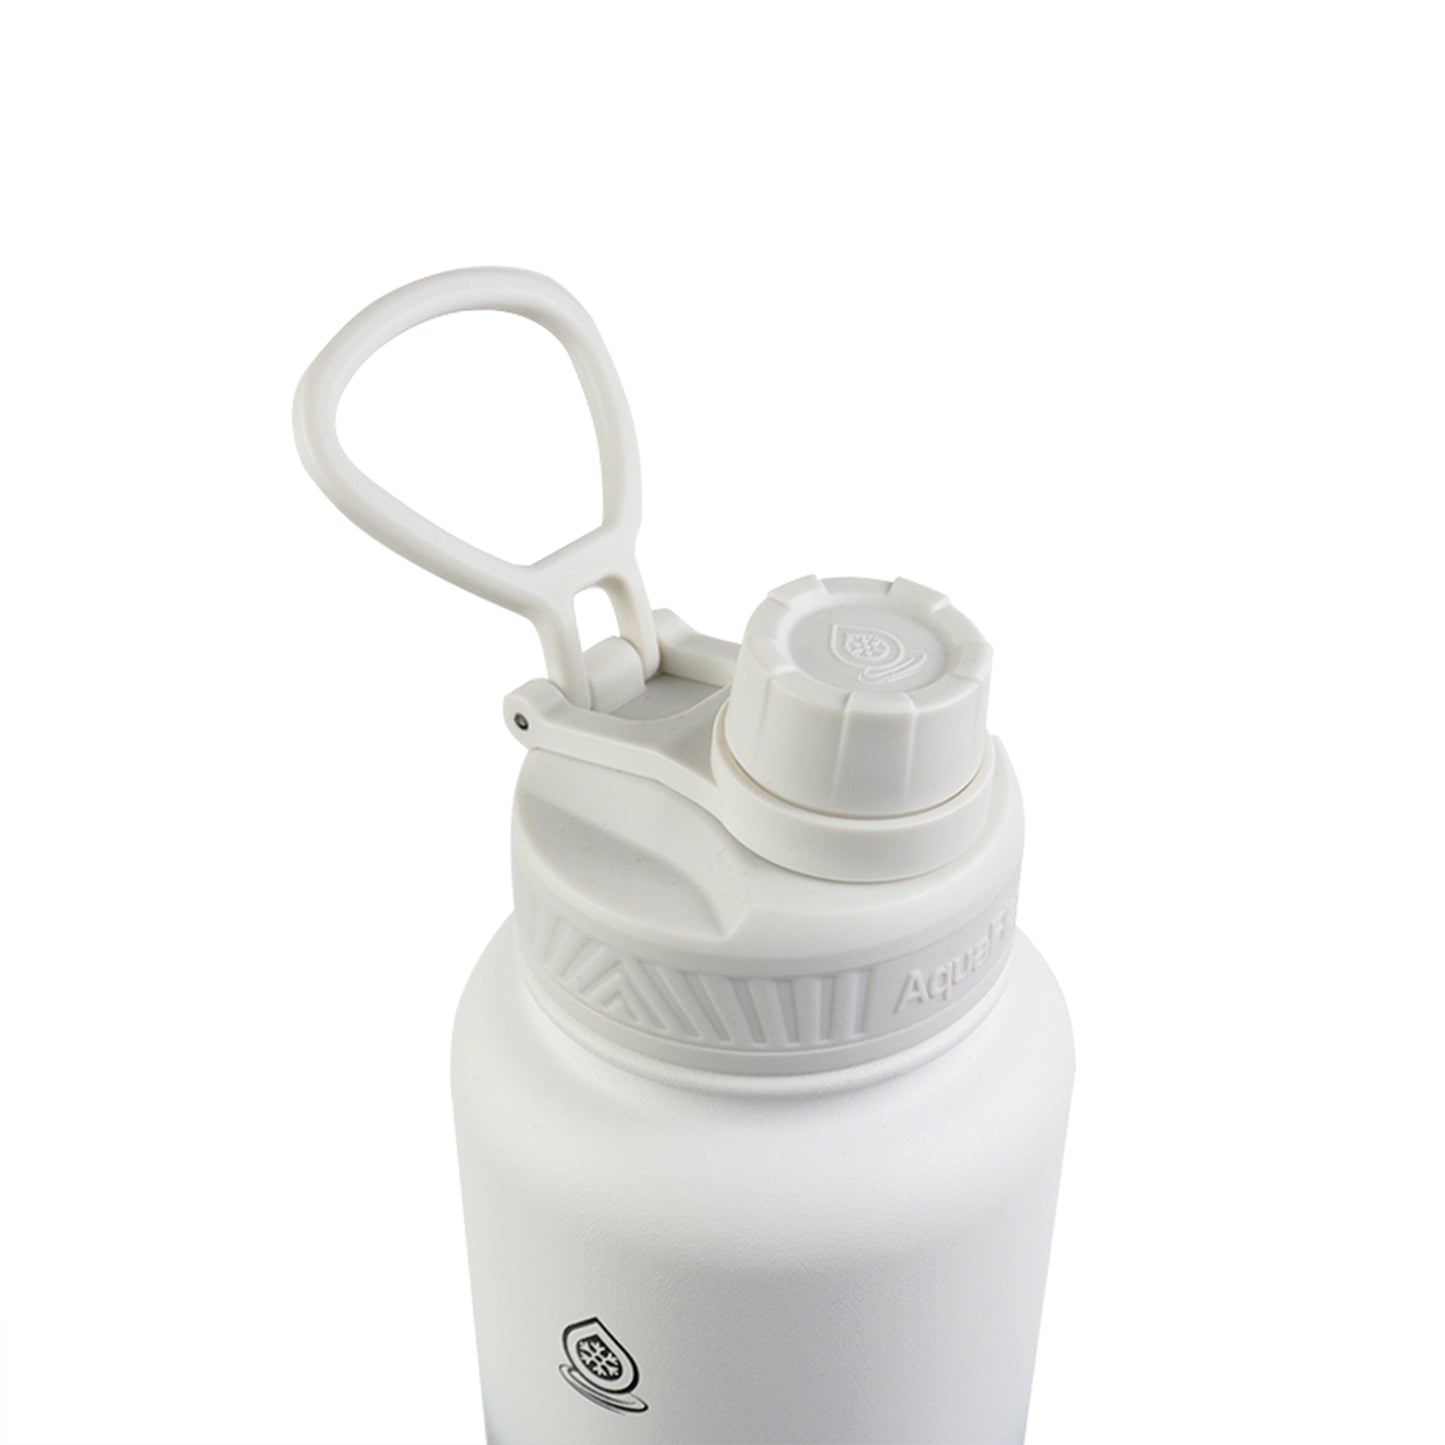 AquaFlask Dream 2 Vacuum Insulated Water Bottles 1180ml (40oz)